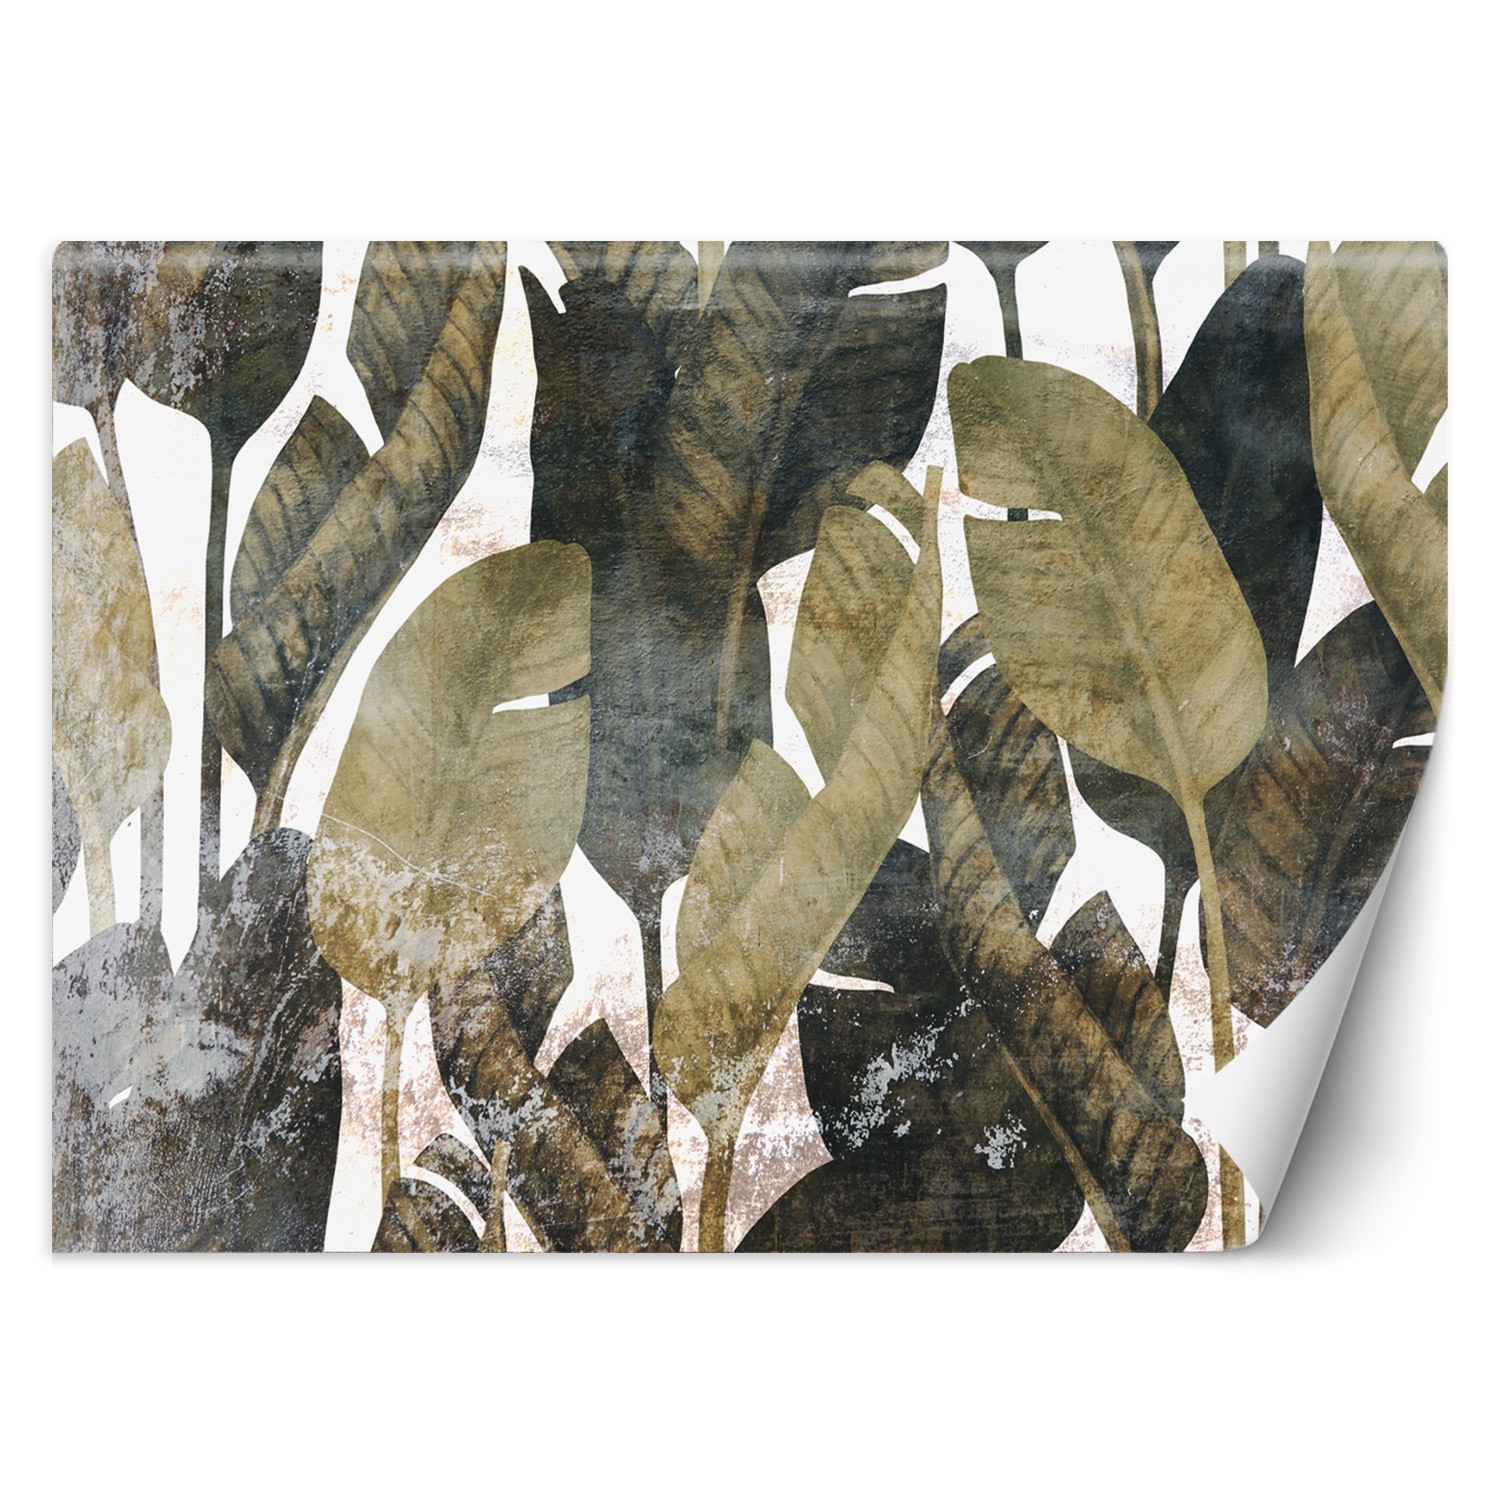 Trend24 – Behang – Bananenblaadjes – Vliesbehang – Fotobehang 3D – Behang Woonkamer – 350×245 cm – Incl. behanglijm